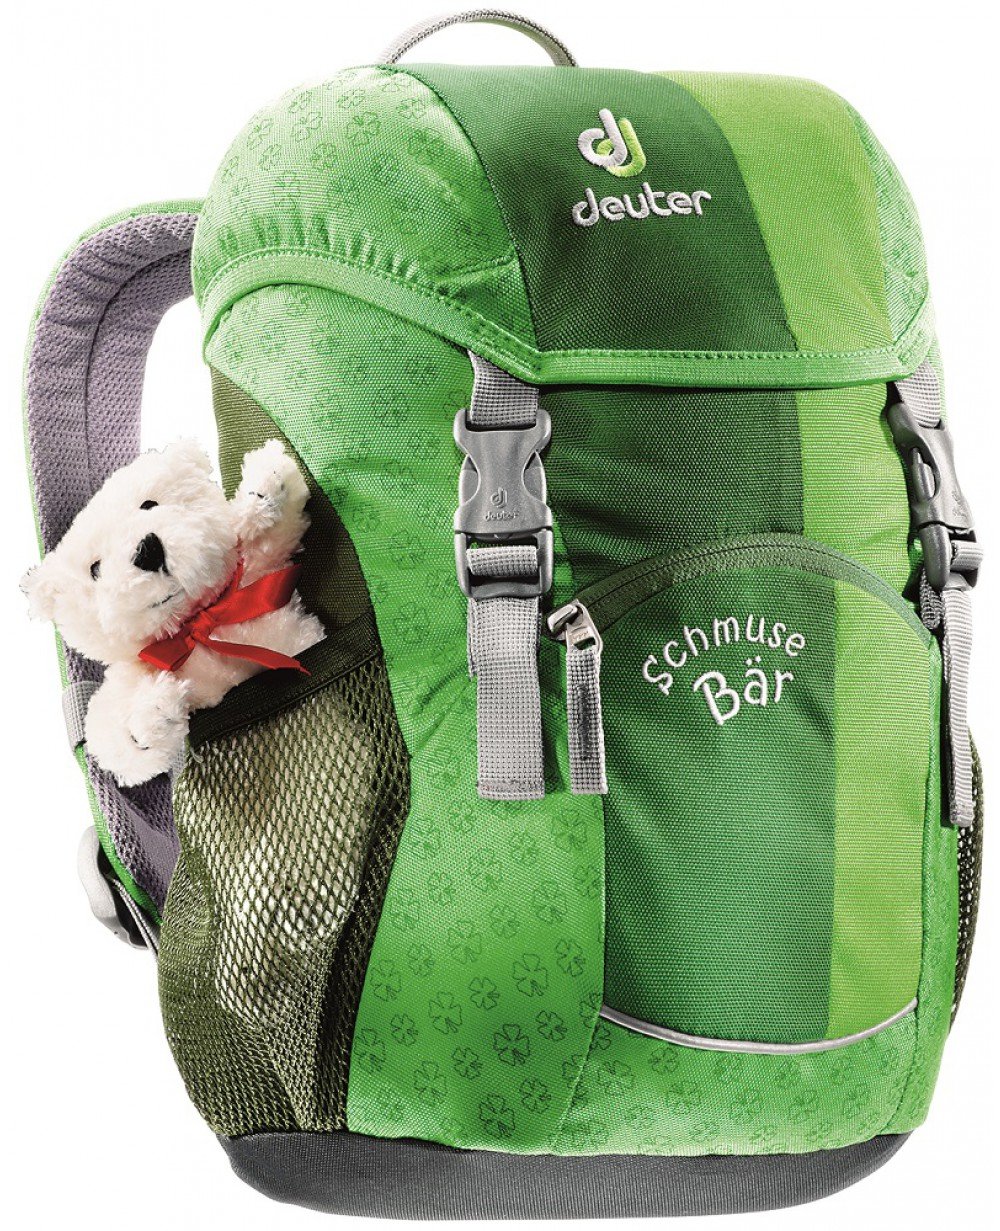 Велосипедный рюкзак Deuter Schmusebar, детский, 34х20х16, 8 л, зеленый, 36003_2004 spiegelburg рюкзак для детского сада t rex world 11674